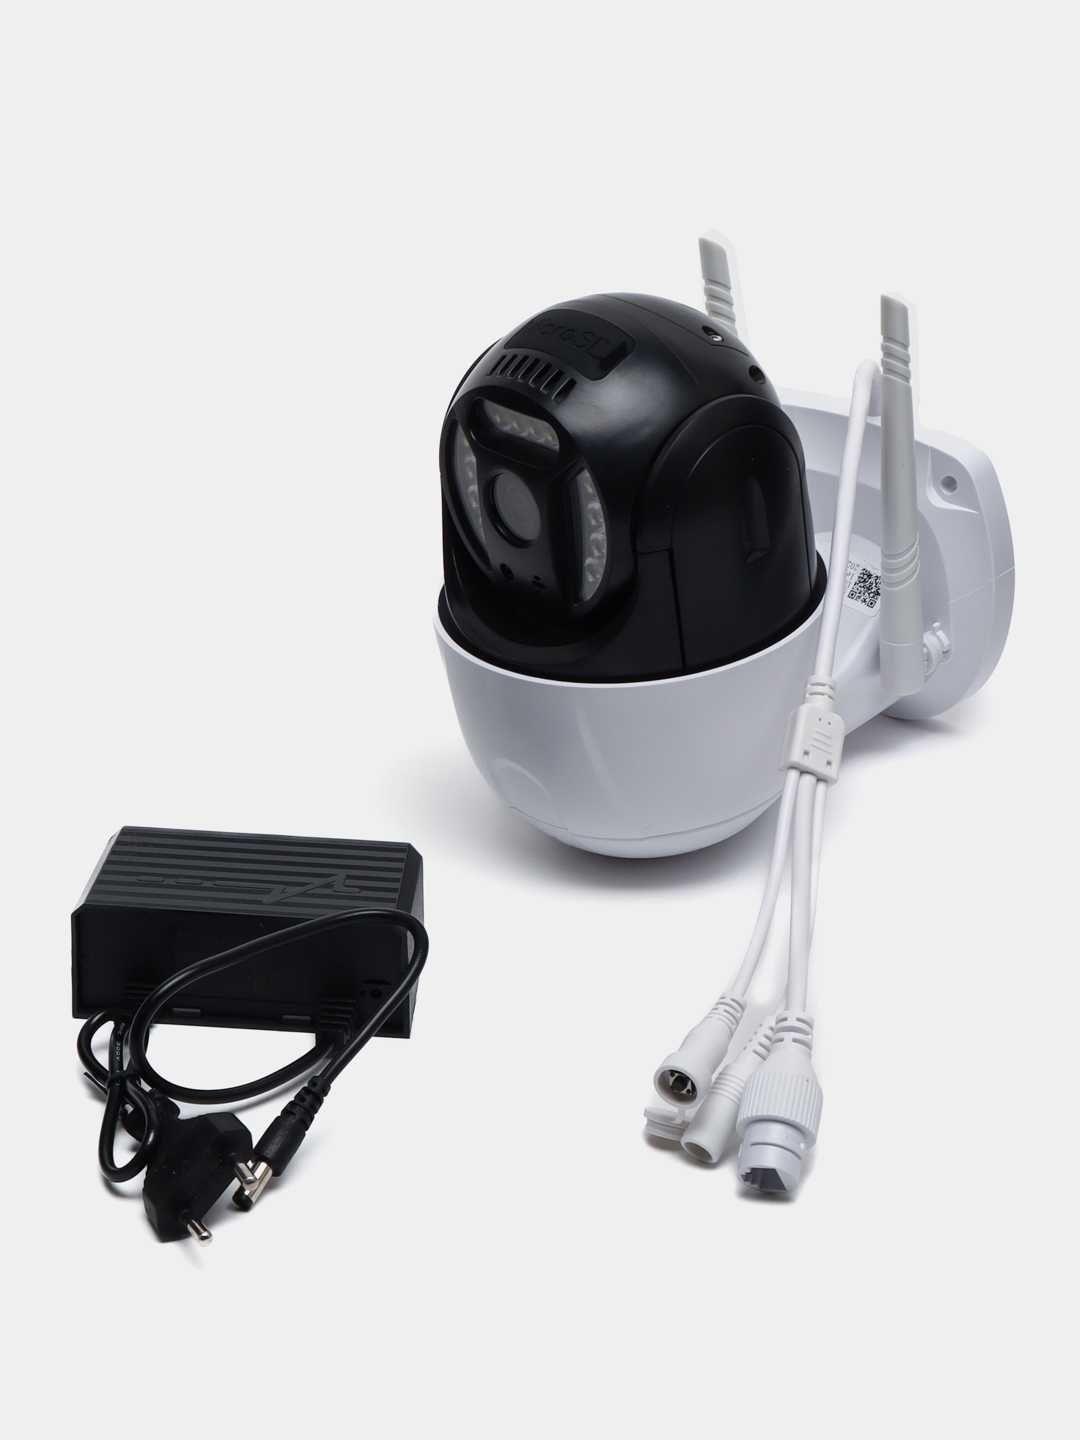 4G Smart Camera model: V380 (Sim karta bilan ishlaydi) Qorovulbozor